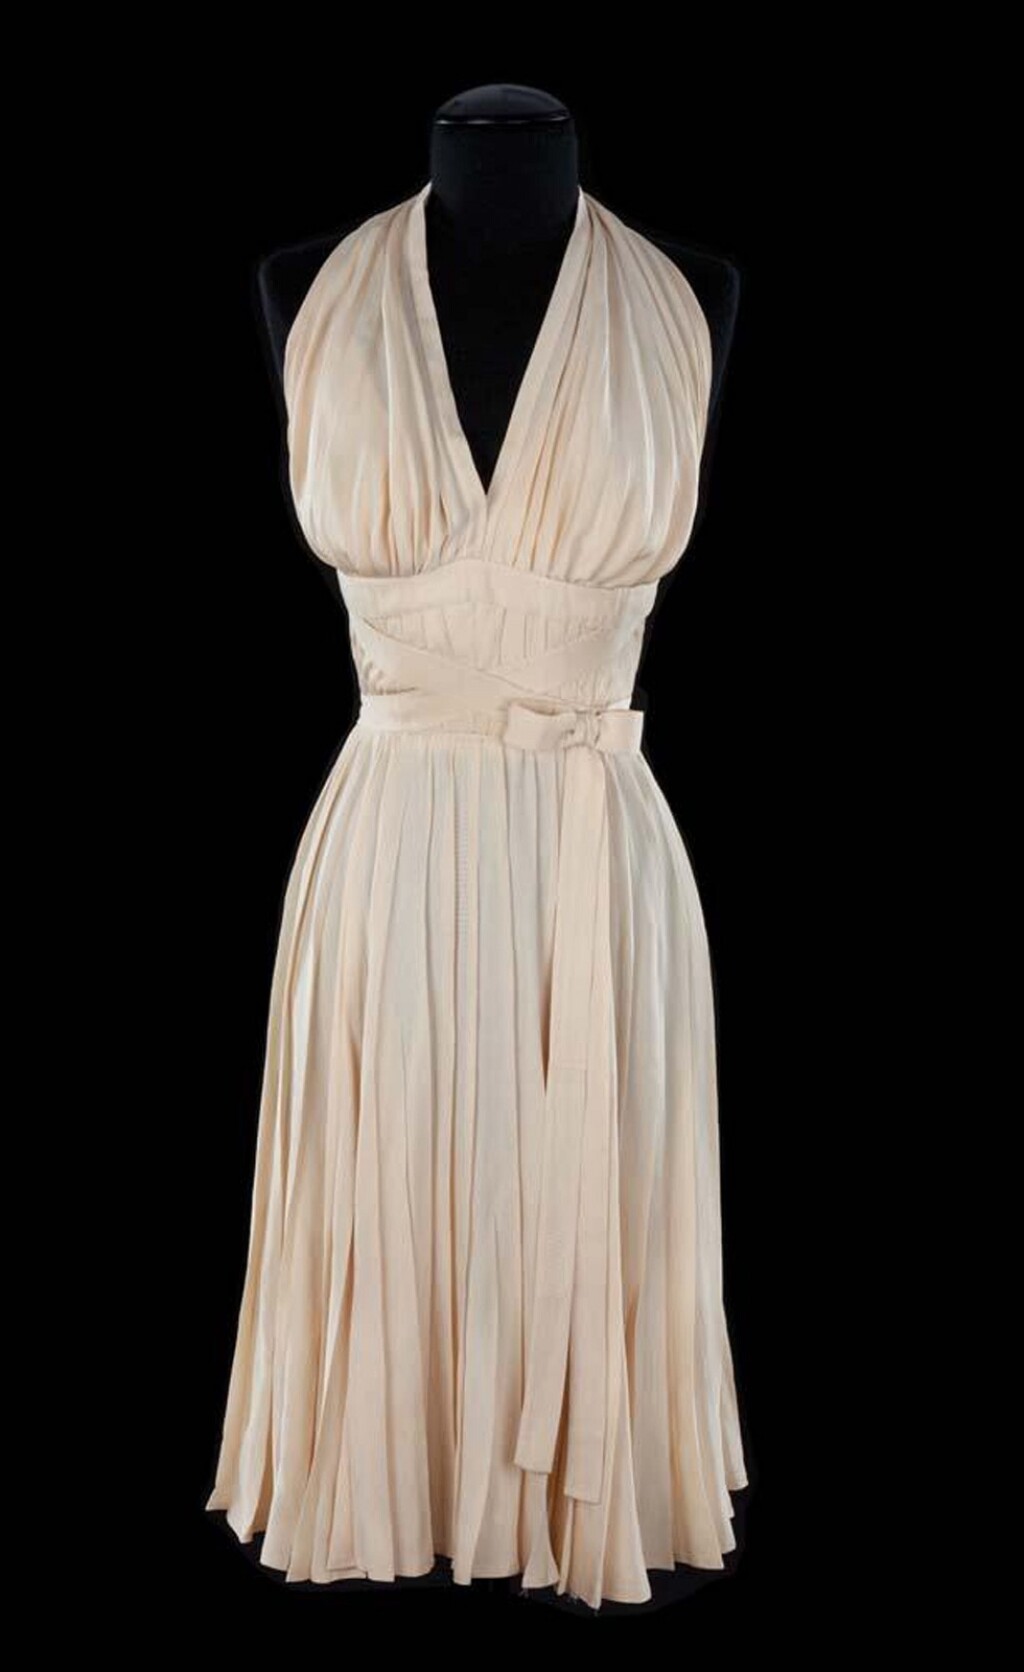 Koktel haljina iz filma Sedam godina vjernosti prodana je na aukciji 2011. godine